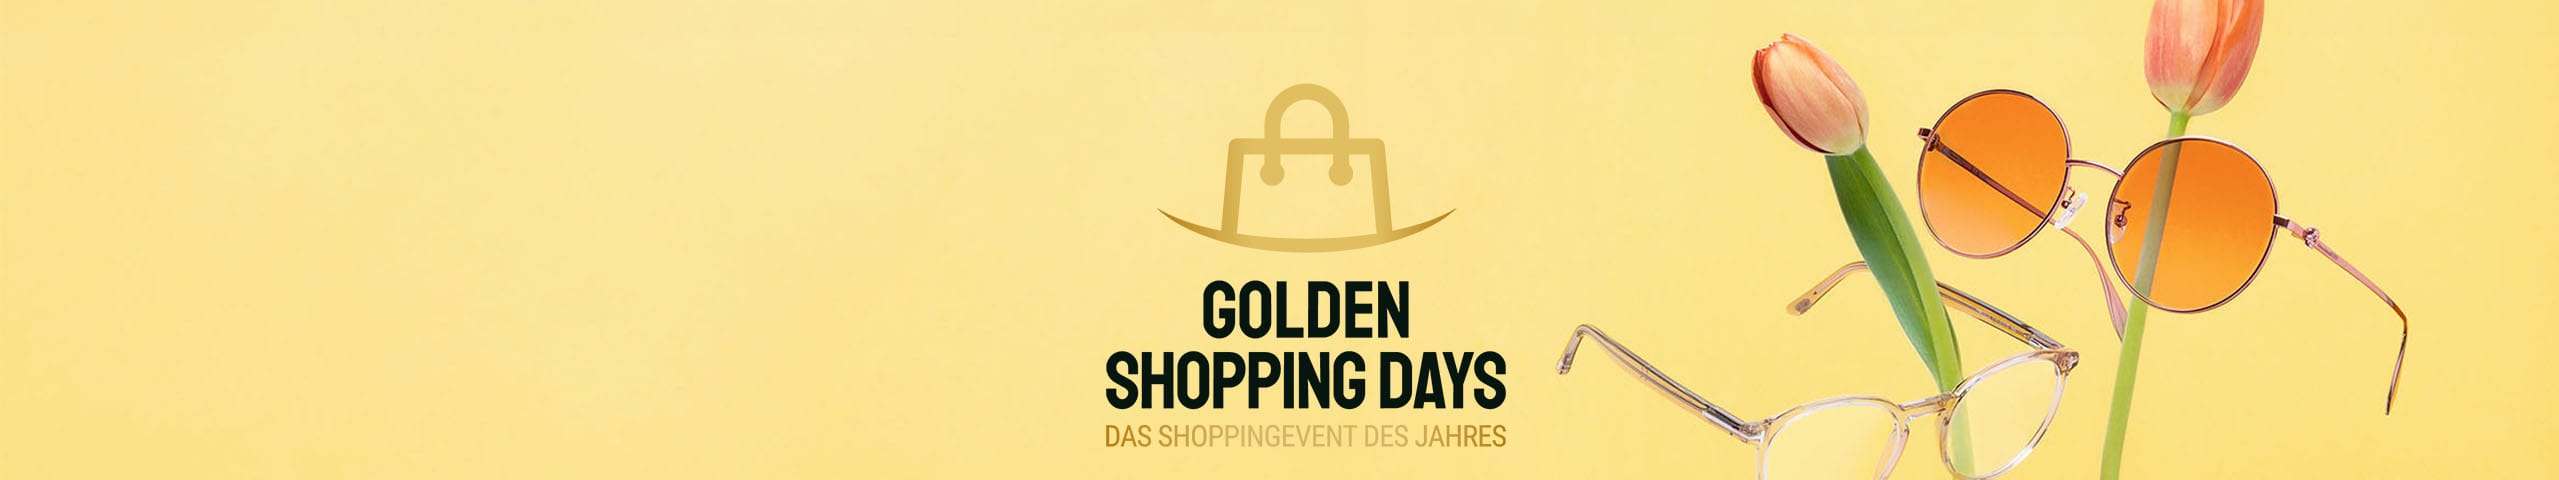 Golden Shopping Days